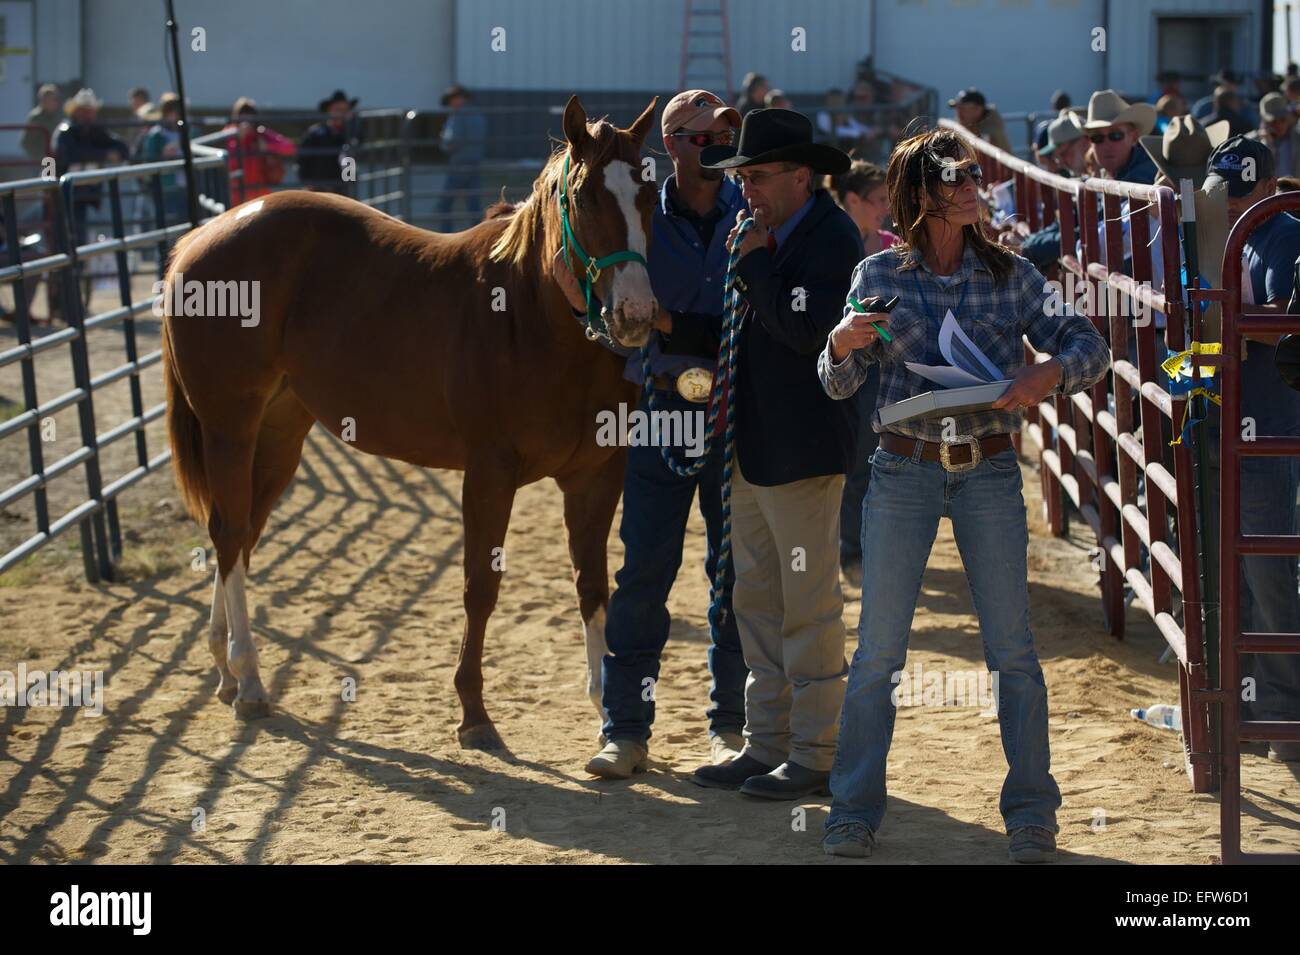 Auktionatoren während einer US-Marshals Auktion von mehr als 300 Quarter Horses und Pferd-Ausrüstungen Zugehörigkeit zu Rita Crundwell, die $ 53 Millionen von der Stadt Dixon 23. September 2012 in Dixon IL Veruntreuung angeklagt worden. Stockfoto